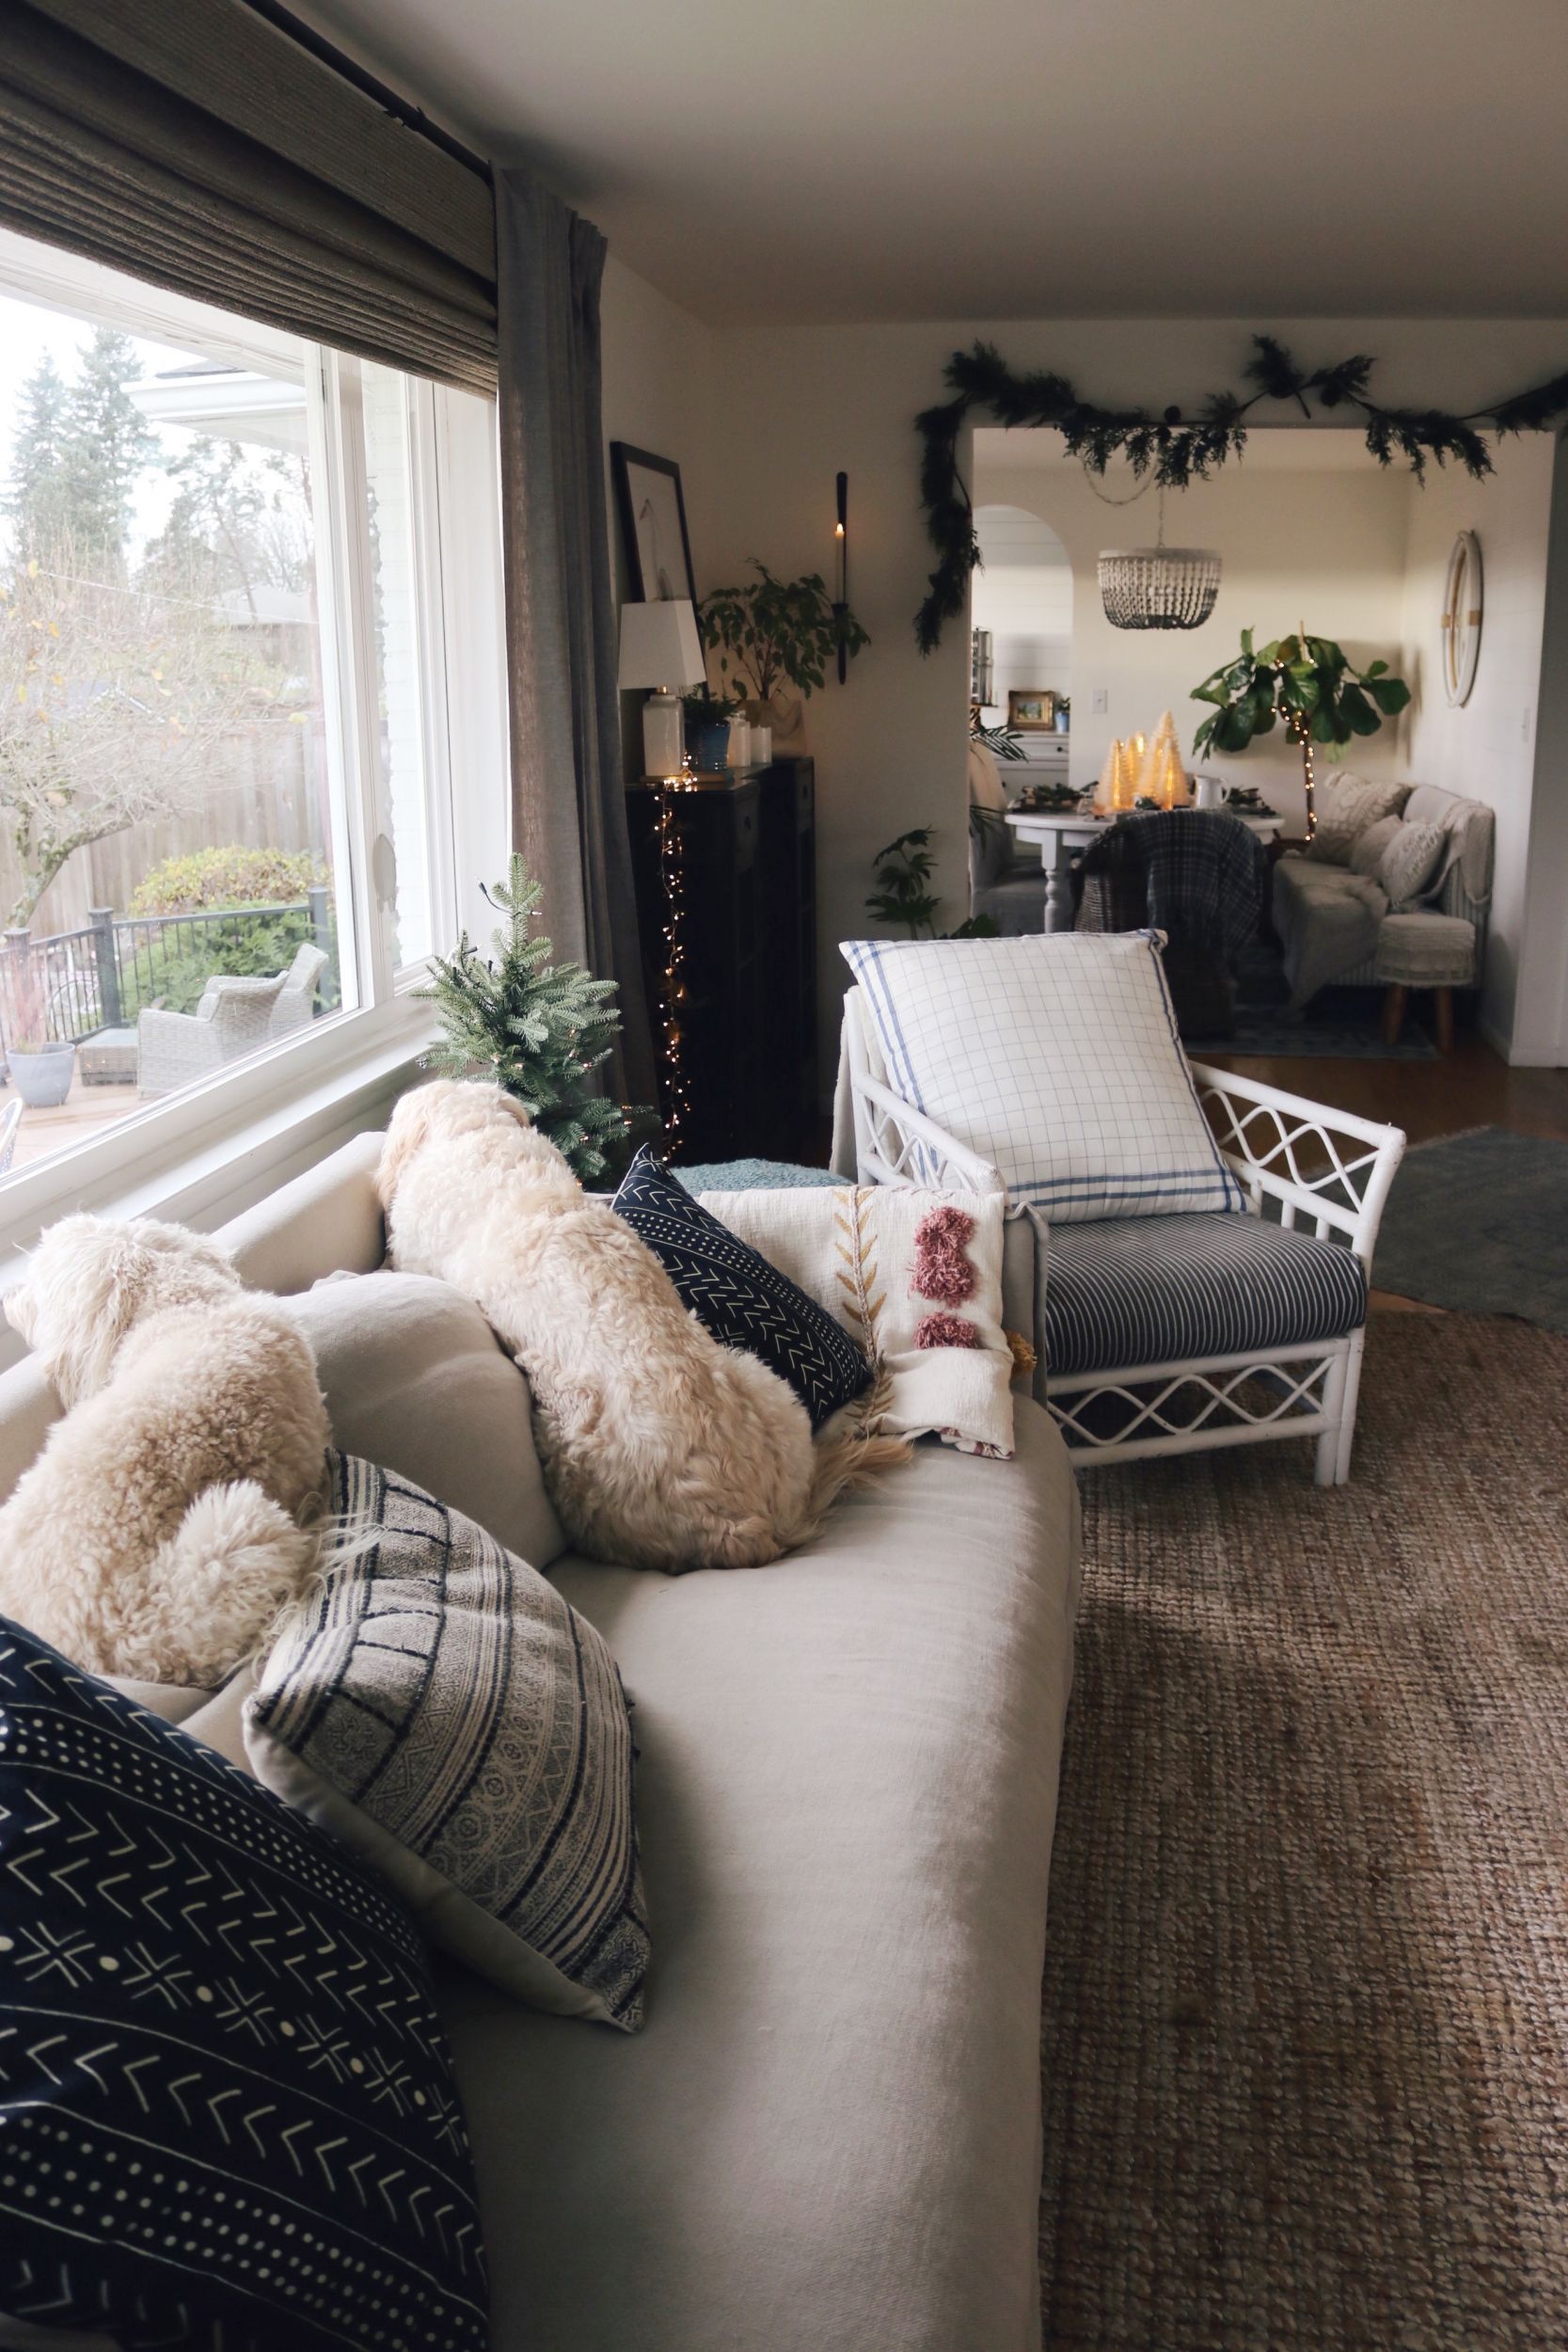 New Linen Slipcovered Sofa In The Living Room! – The Inspired Room Inside Gray Linen Sofas (View 15 of 15)